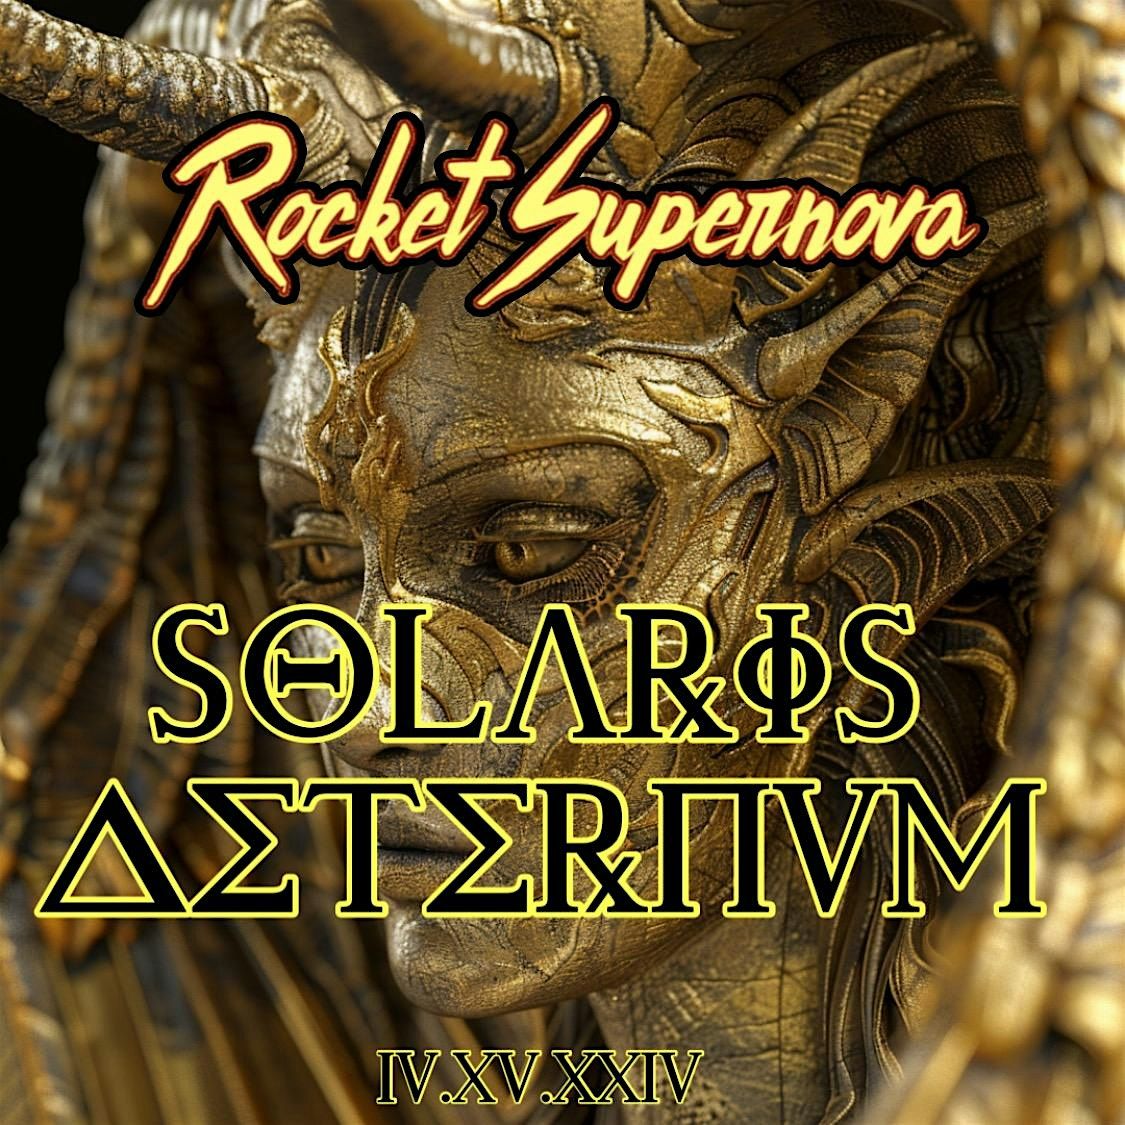 Solaris Aeternum